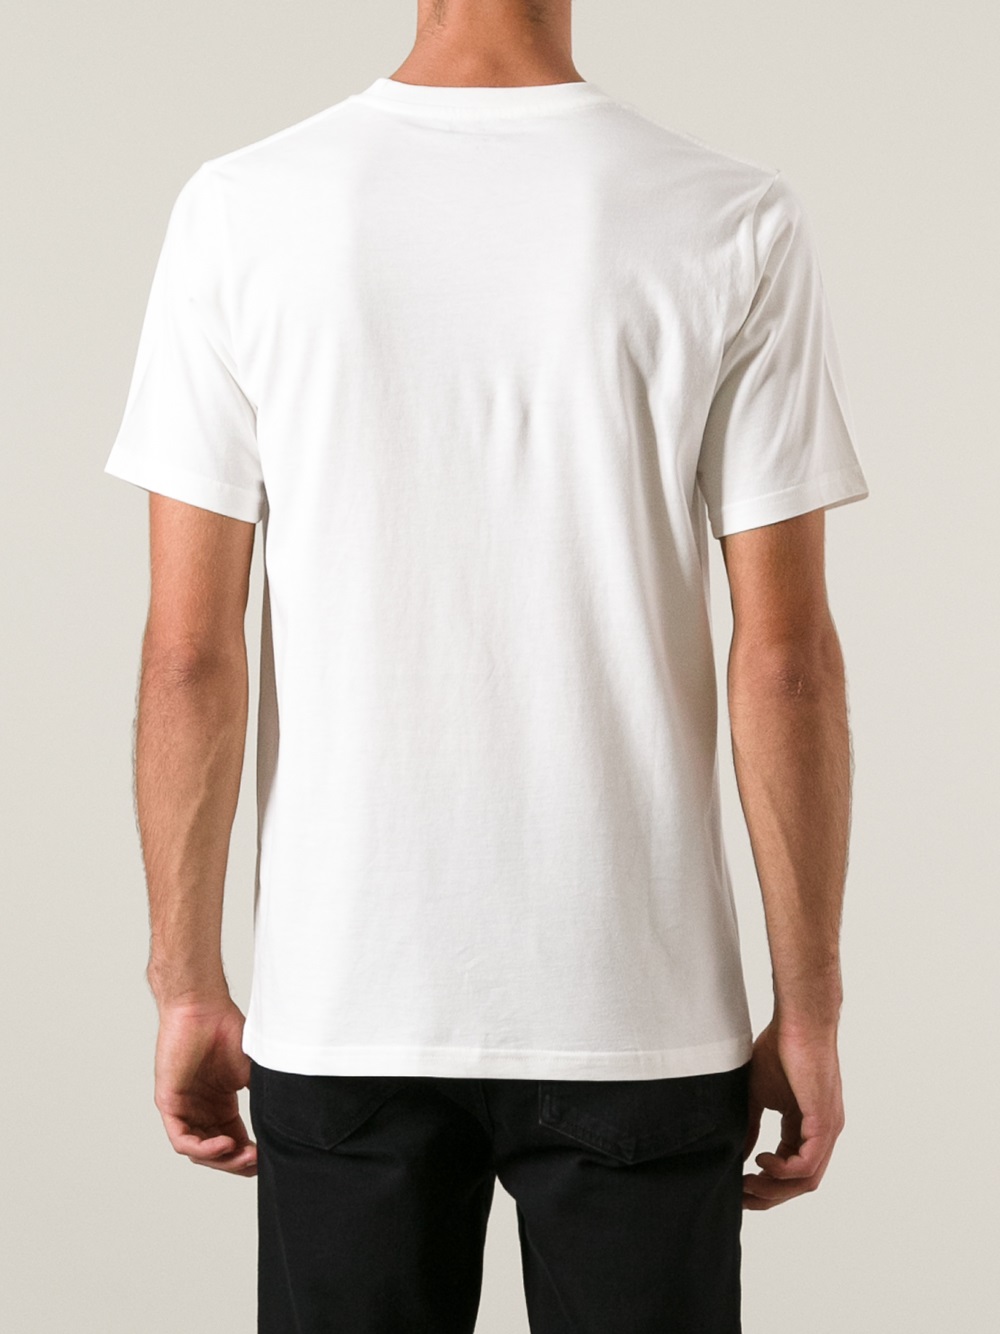 Lyst - Paul Smith Hammer Print Tshirt in White for Men